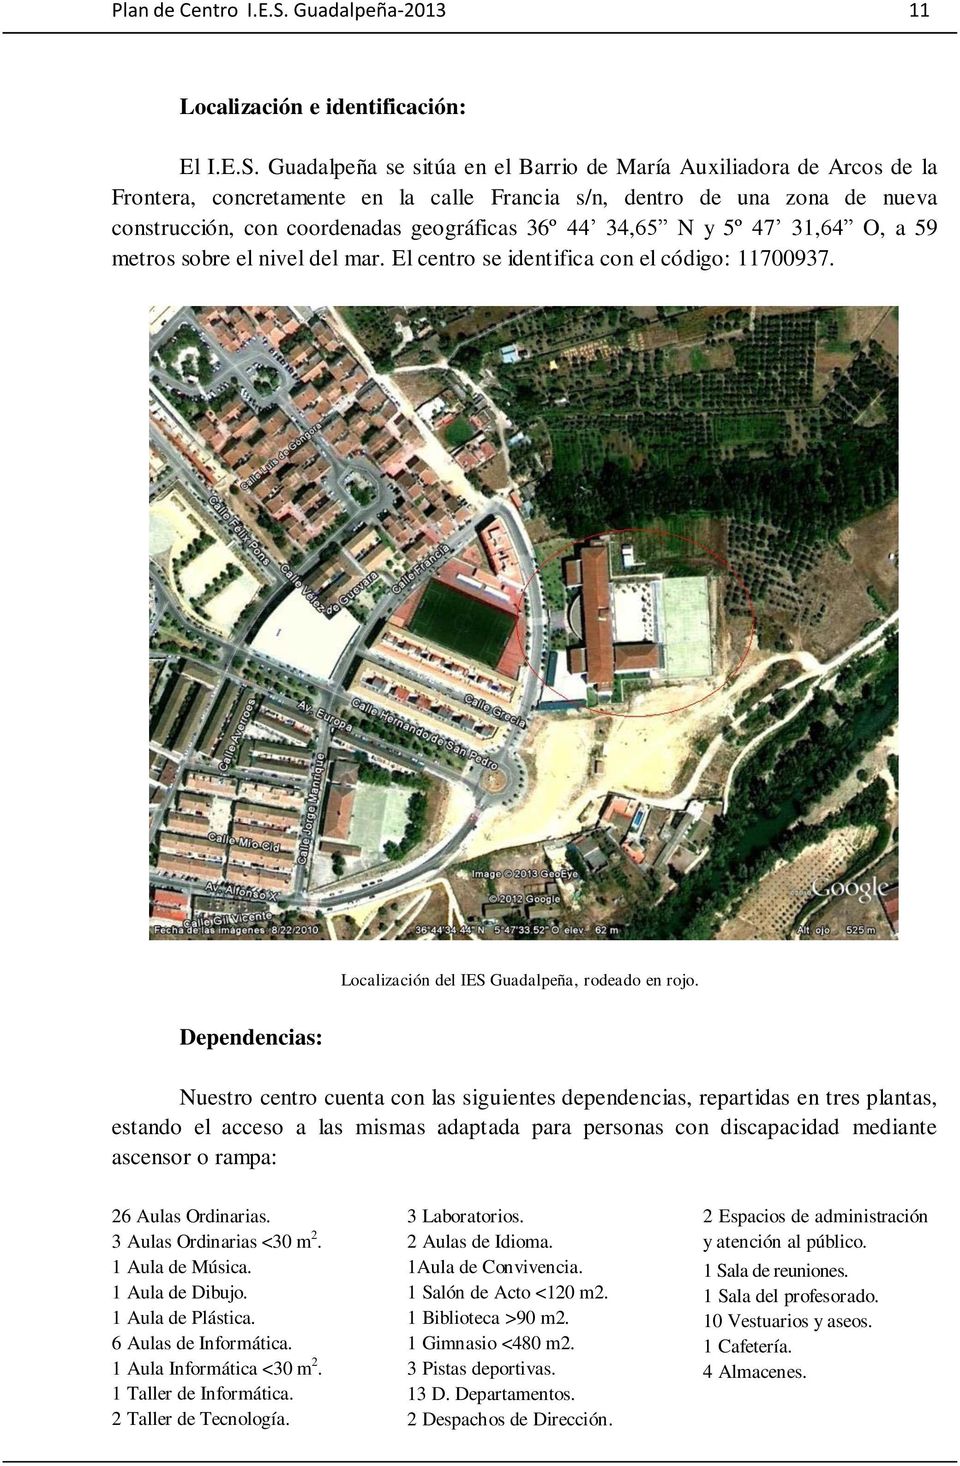 Guadalpeña se sitúa en el Barrio de María Auxiliadora de Arcos de la Frontera, concretamente en la calle Francia s/n, dentro de una zona de nueva construcción, con coordenadas geográficas 36º 44